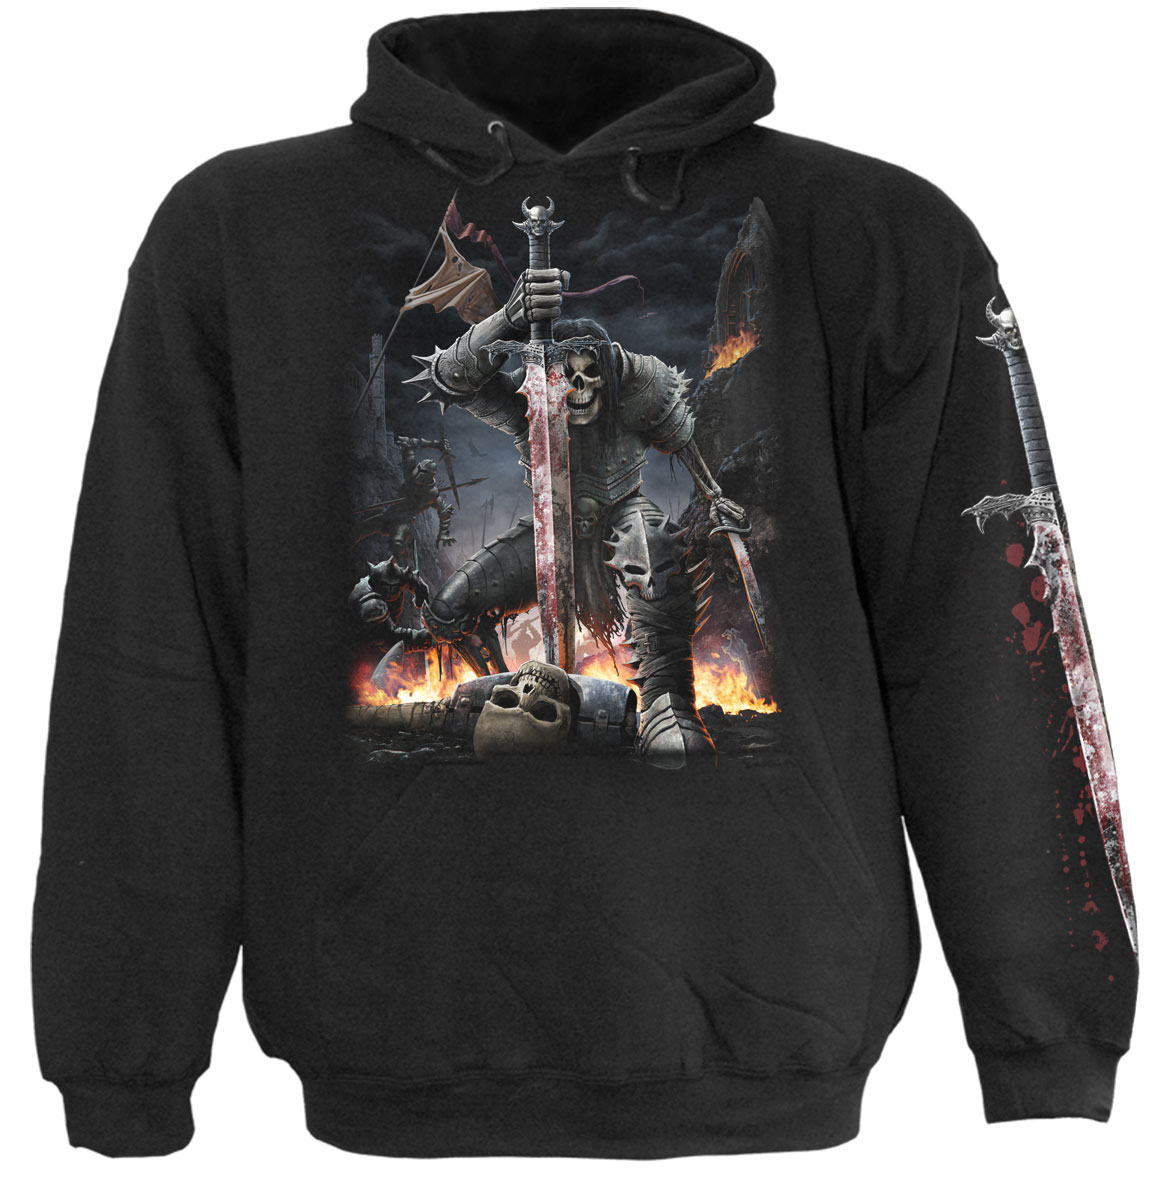 spiral direct blood hoodies,black horror hoodies,black mens hoodies,male horror hoodies,gothic mens hoodies